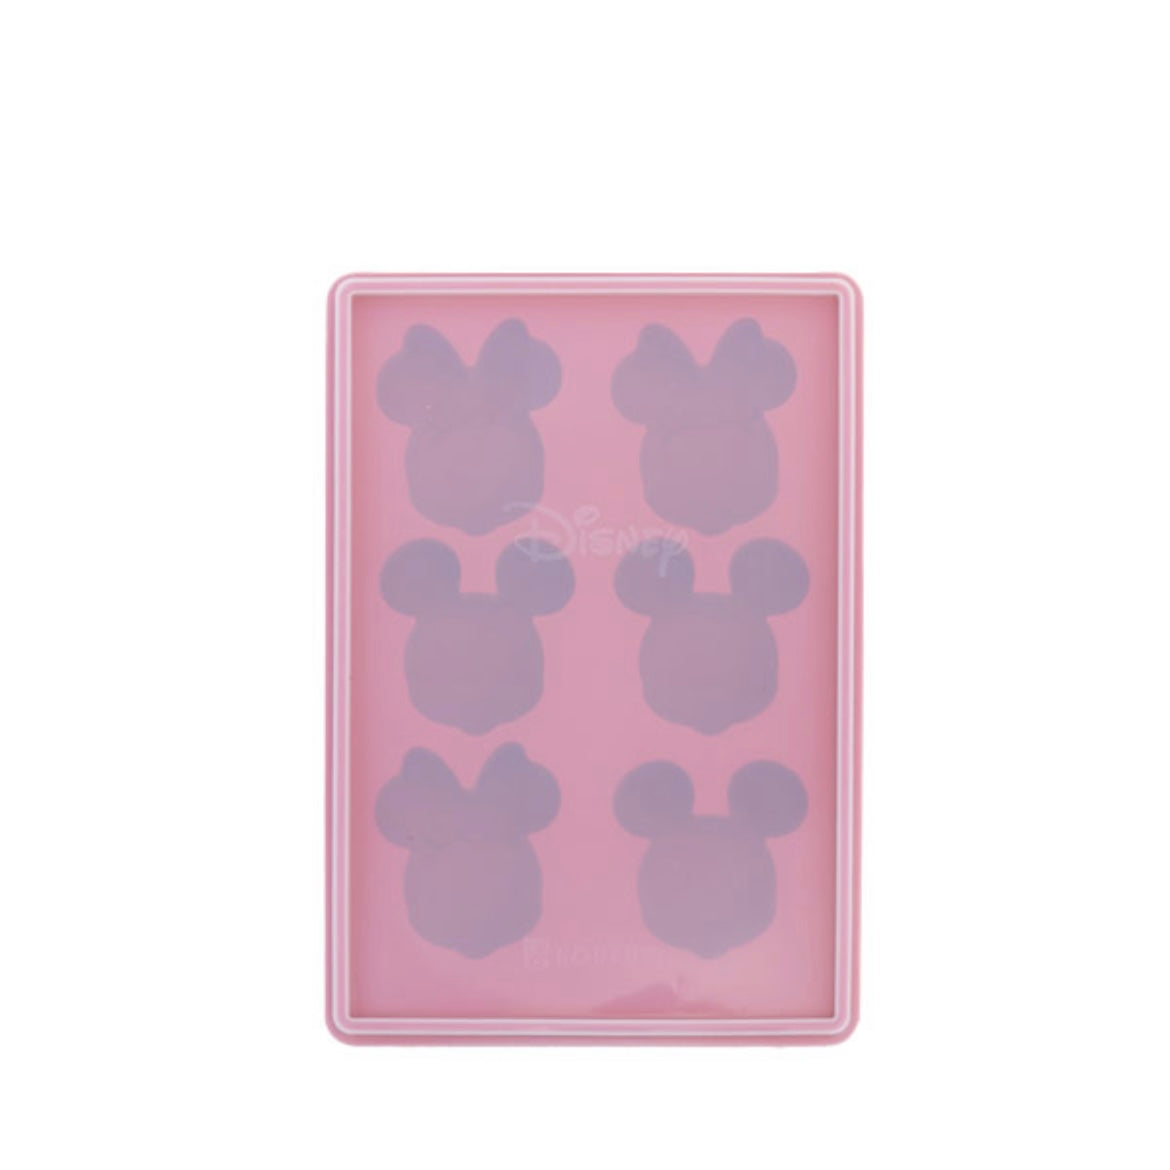 台灣 矽膠製冰盒 Pool / Mickey & Minnie